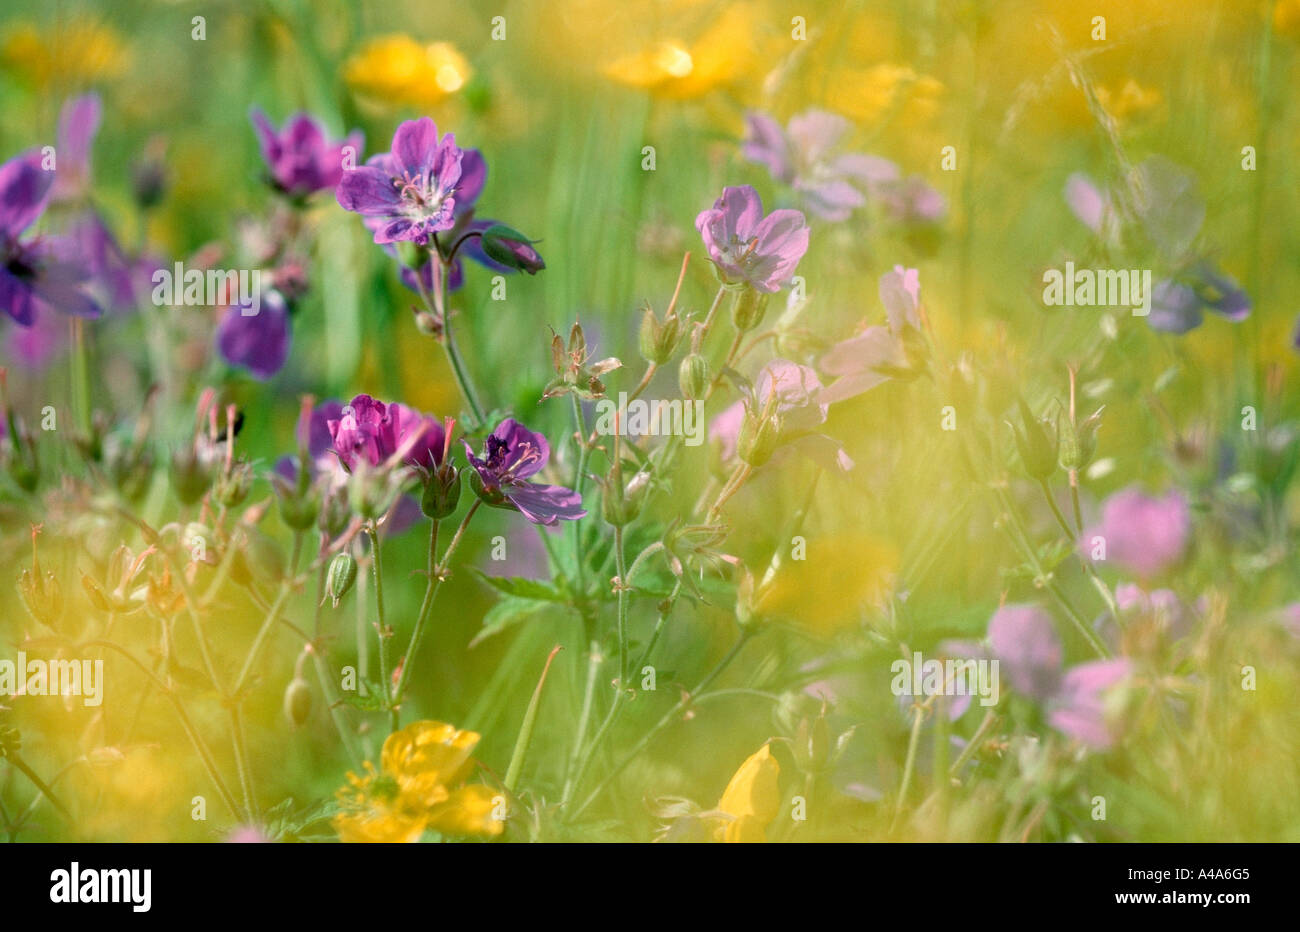 Flower Meadow / Blumenwiese Stock Photo